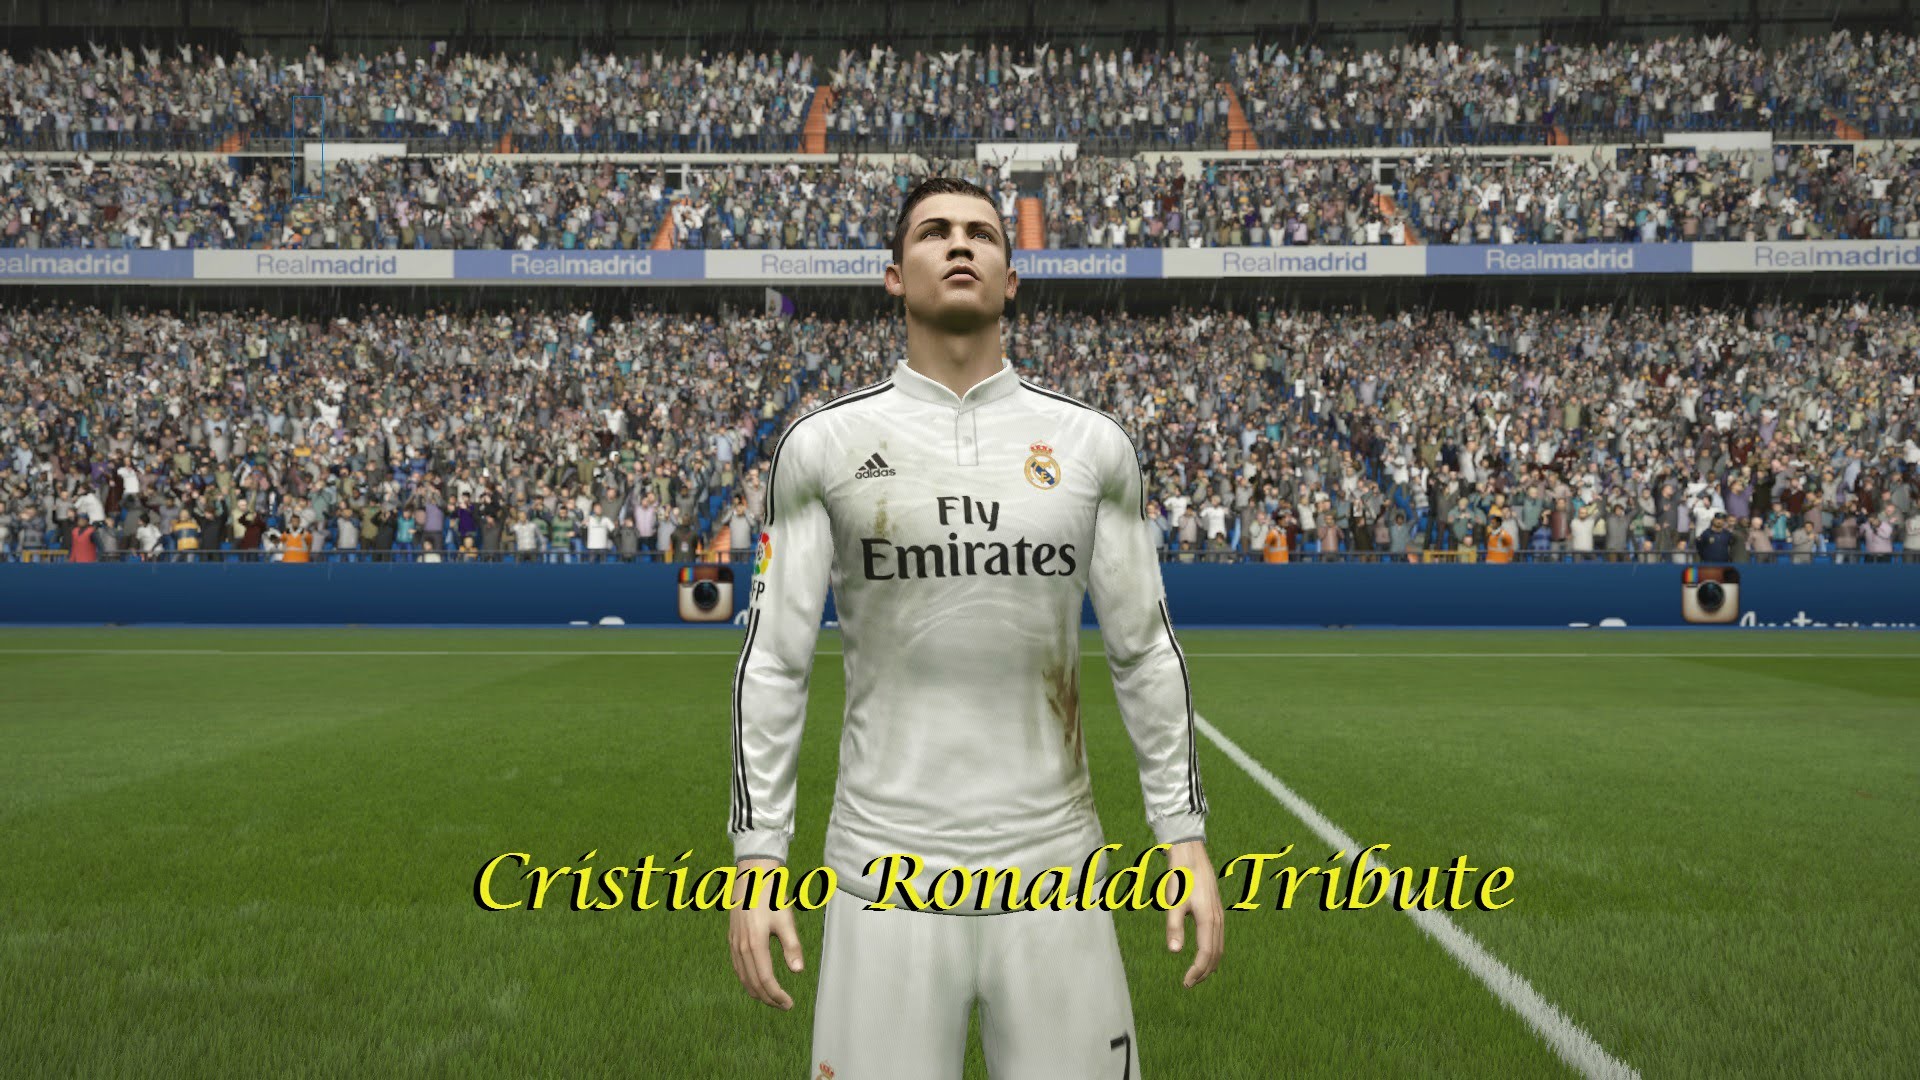 1920x1080 FIFA 15: Cristiano Ronaldo Tribute